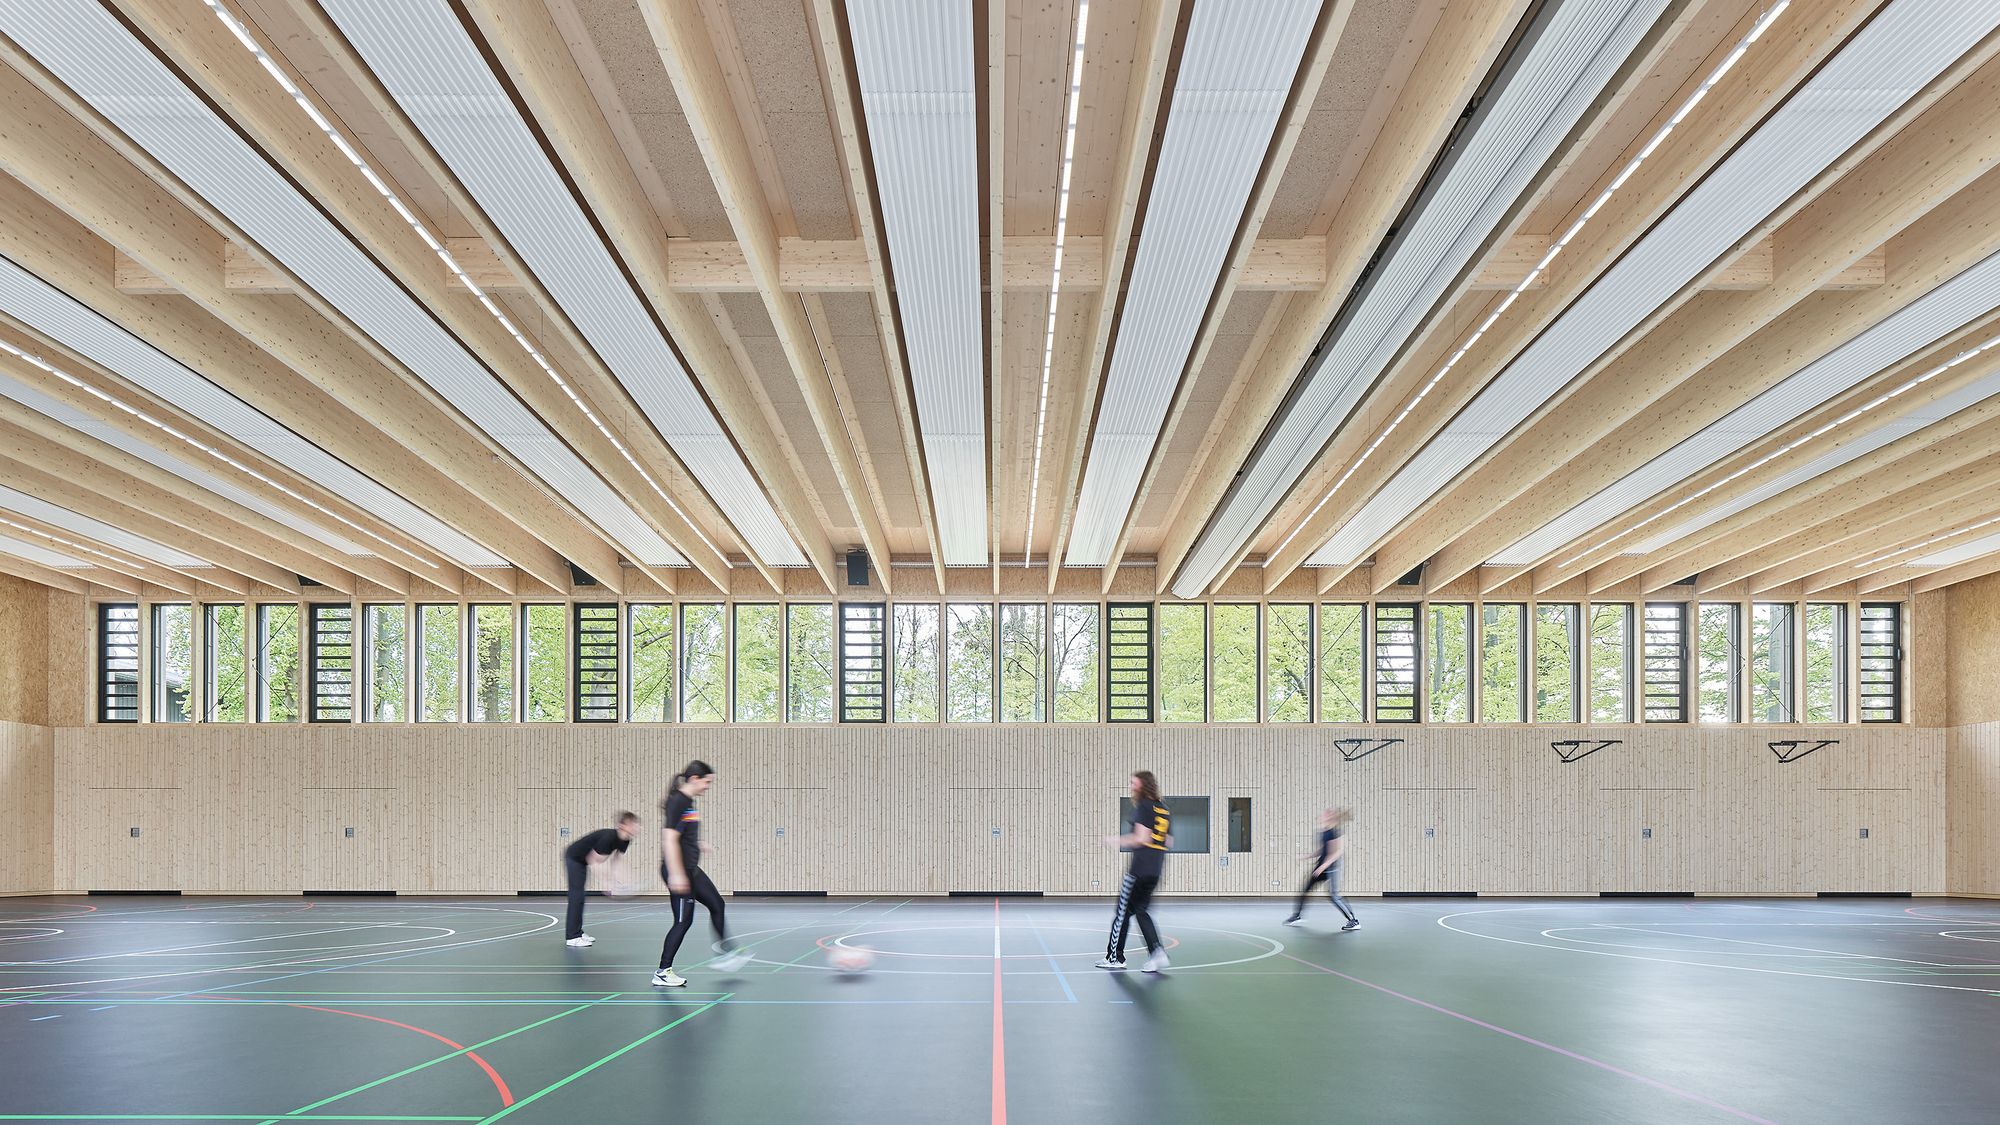 图片[7]|鲁特州立体育学校-体育馆|ART-Arrakis | 建筑室内设计的创新与灵感